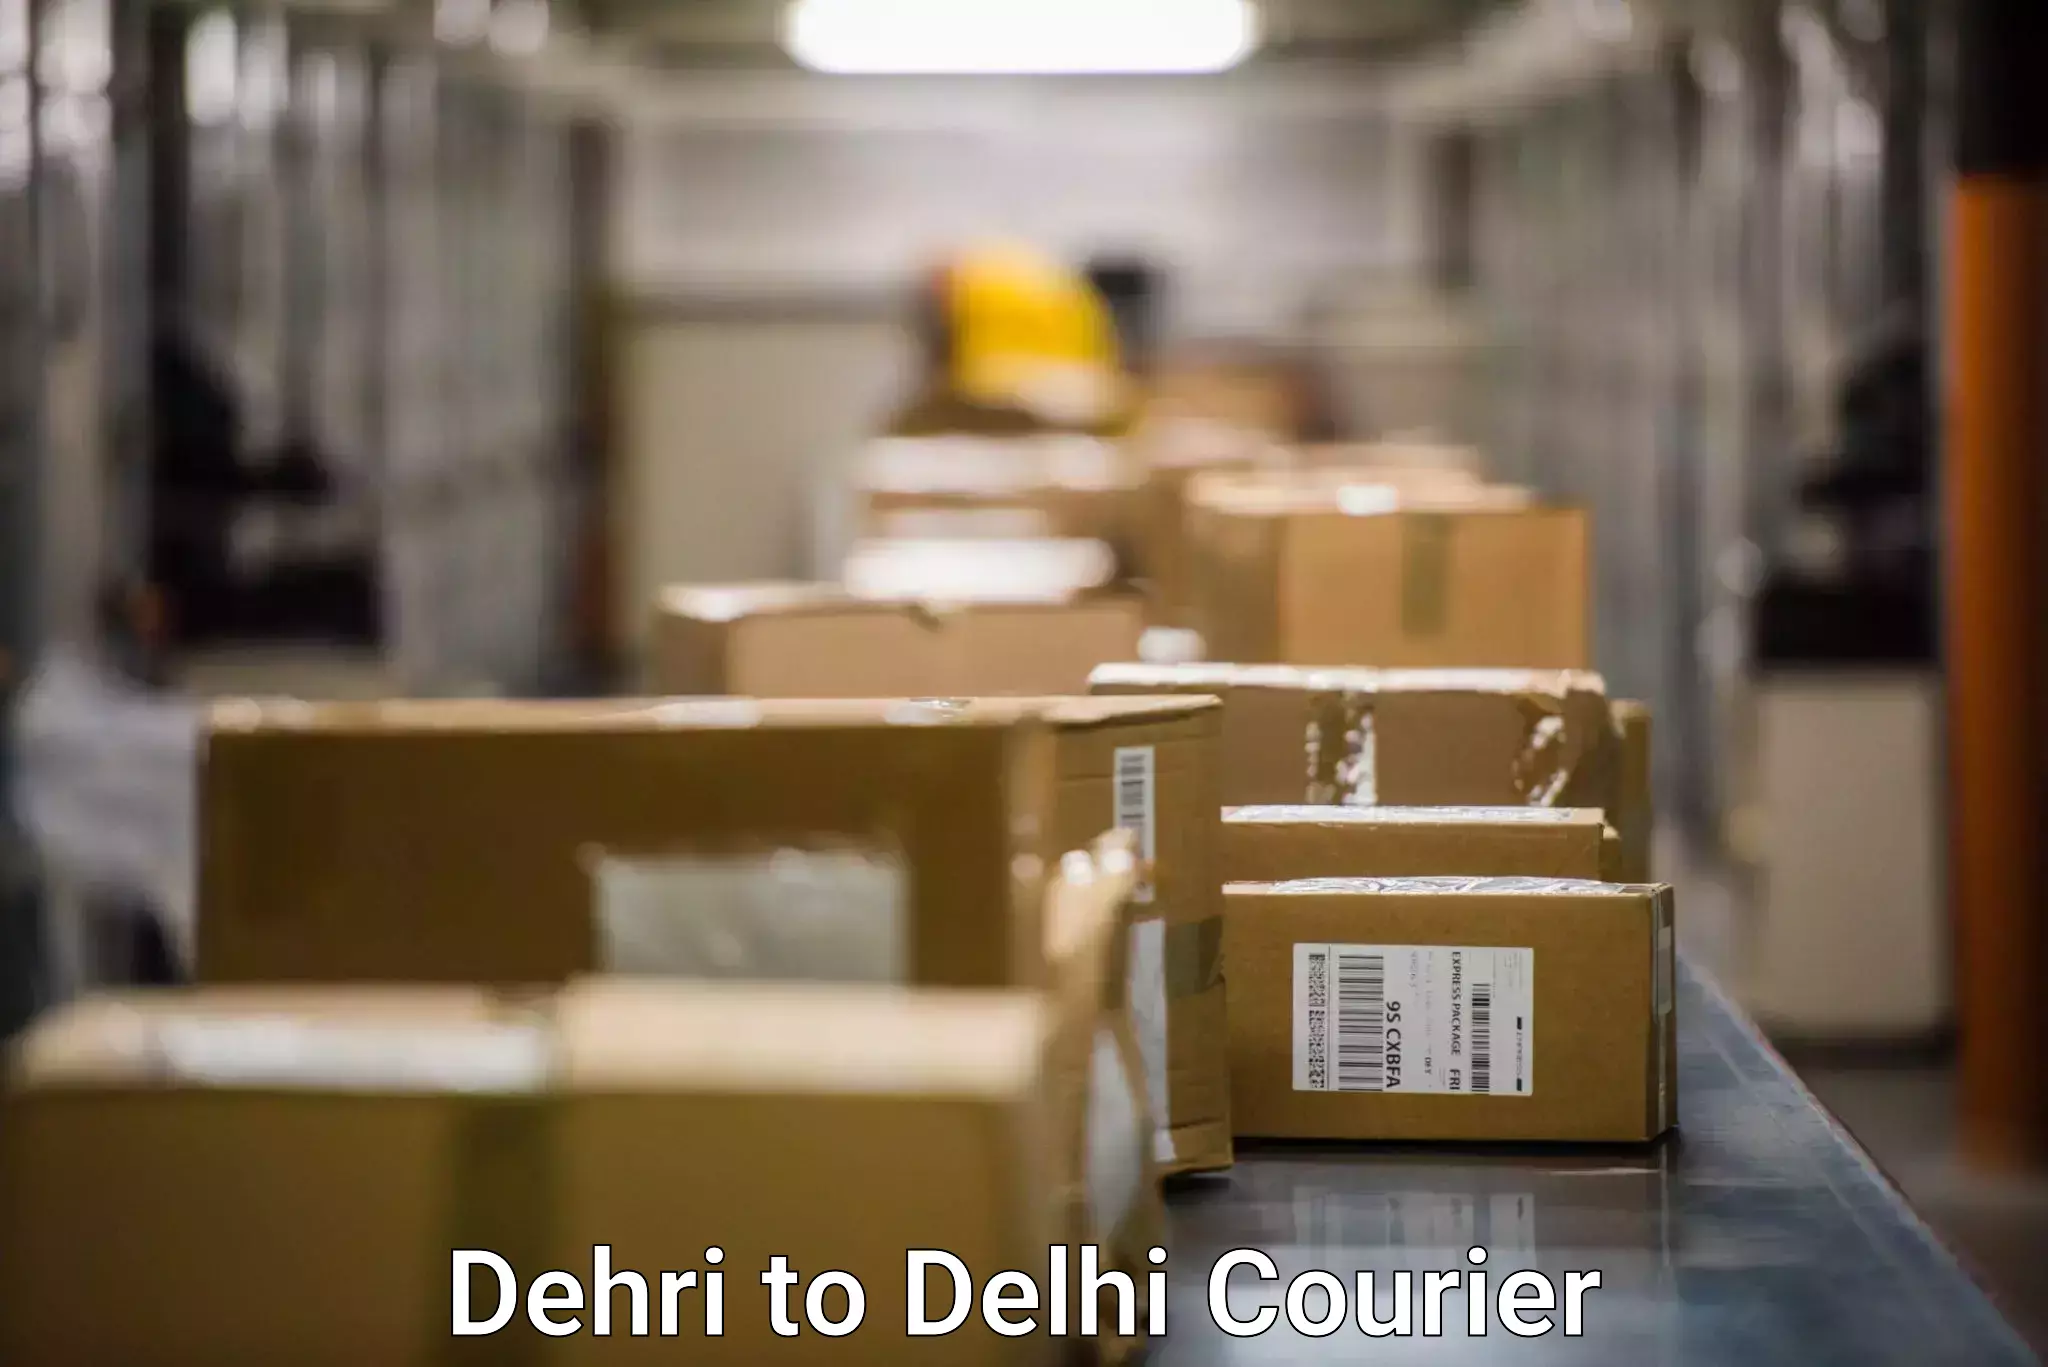 Efficient freight service Dehri to IIT Delhi